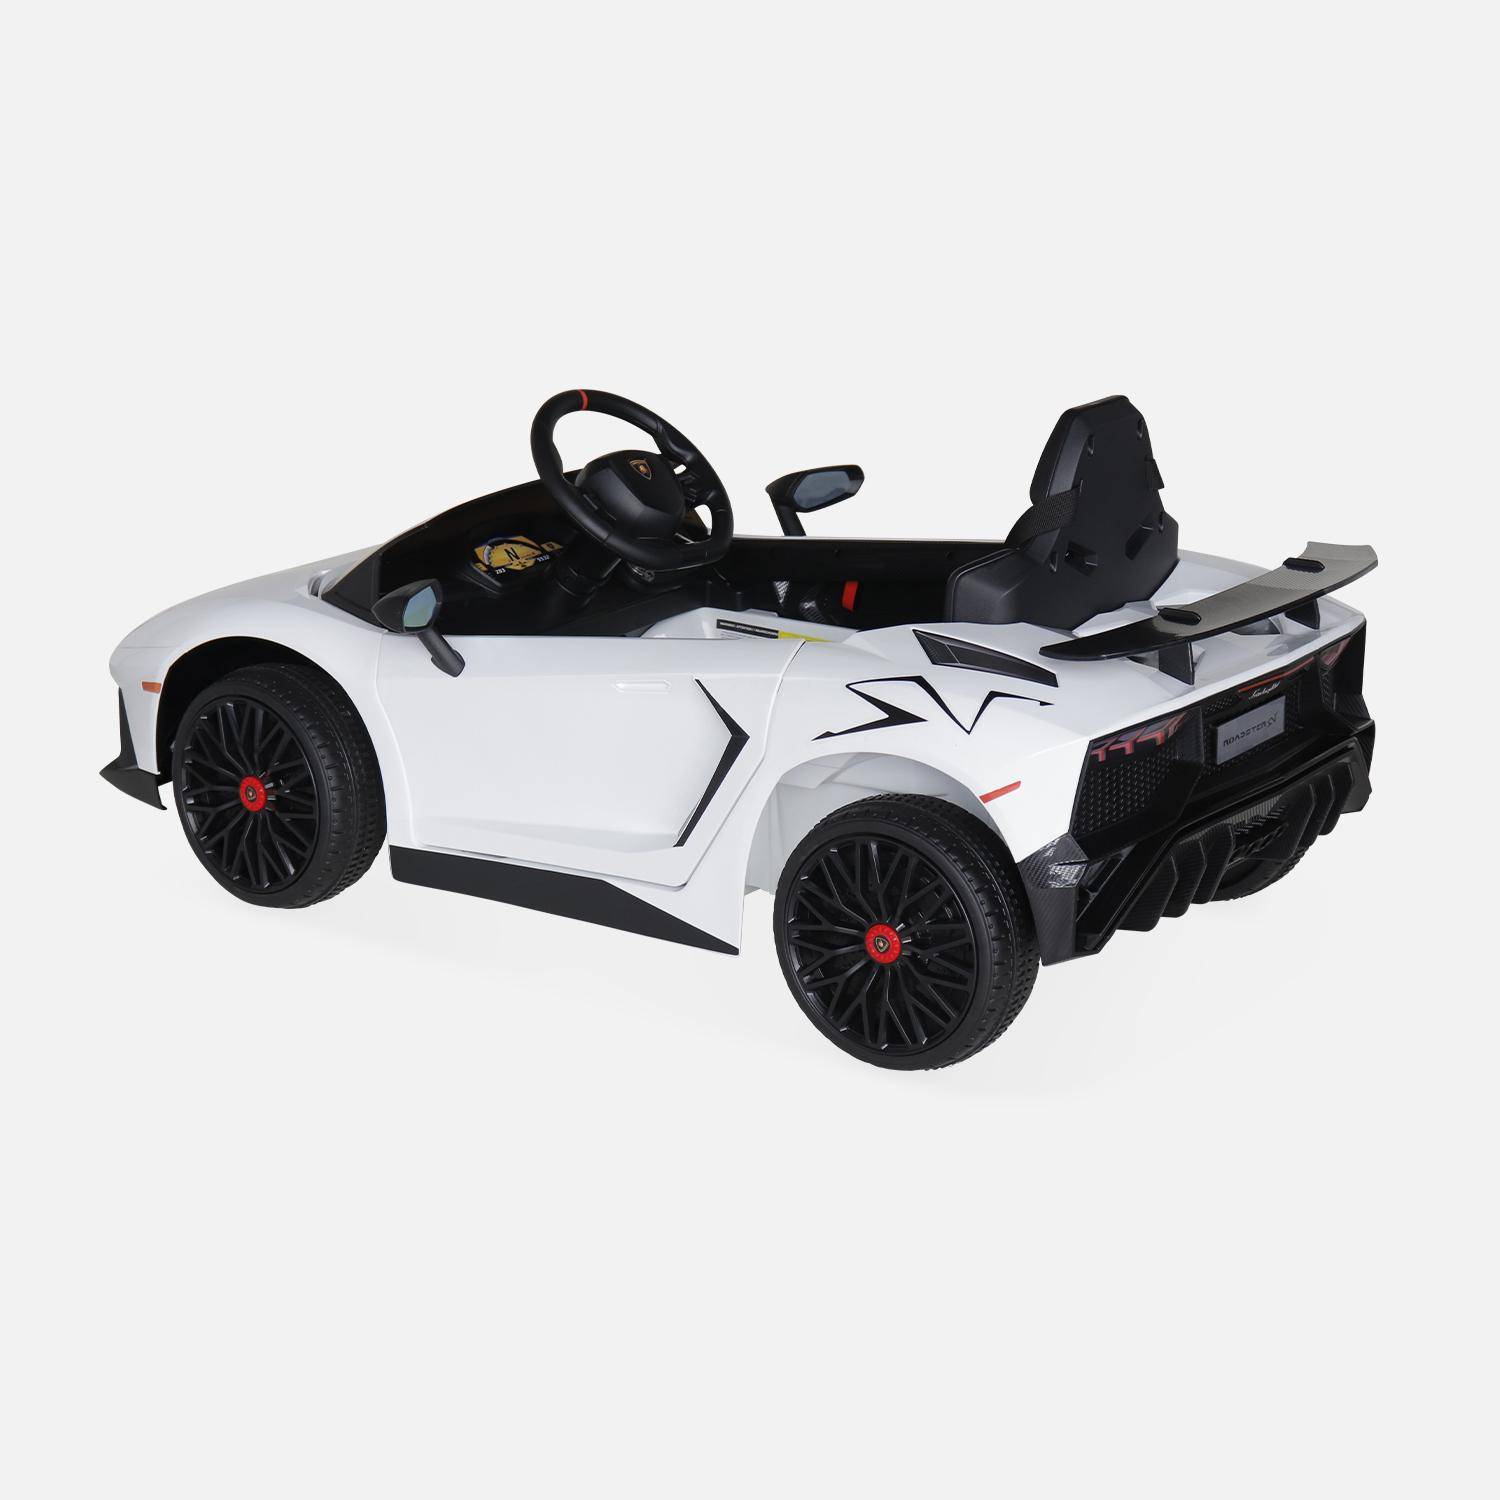 12V Lamborghini elektrische kinderauto, wit, 1 zitplaats, met radio, afstandsbediening, MP3, USB-poort en functionele koplampen Photo4